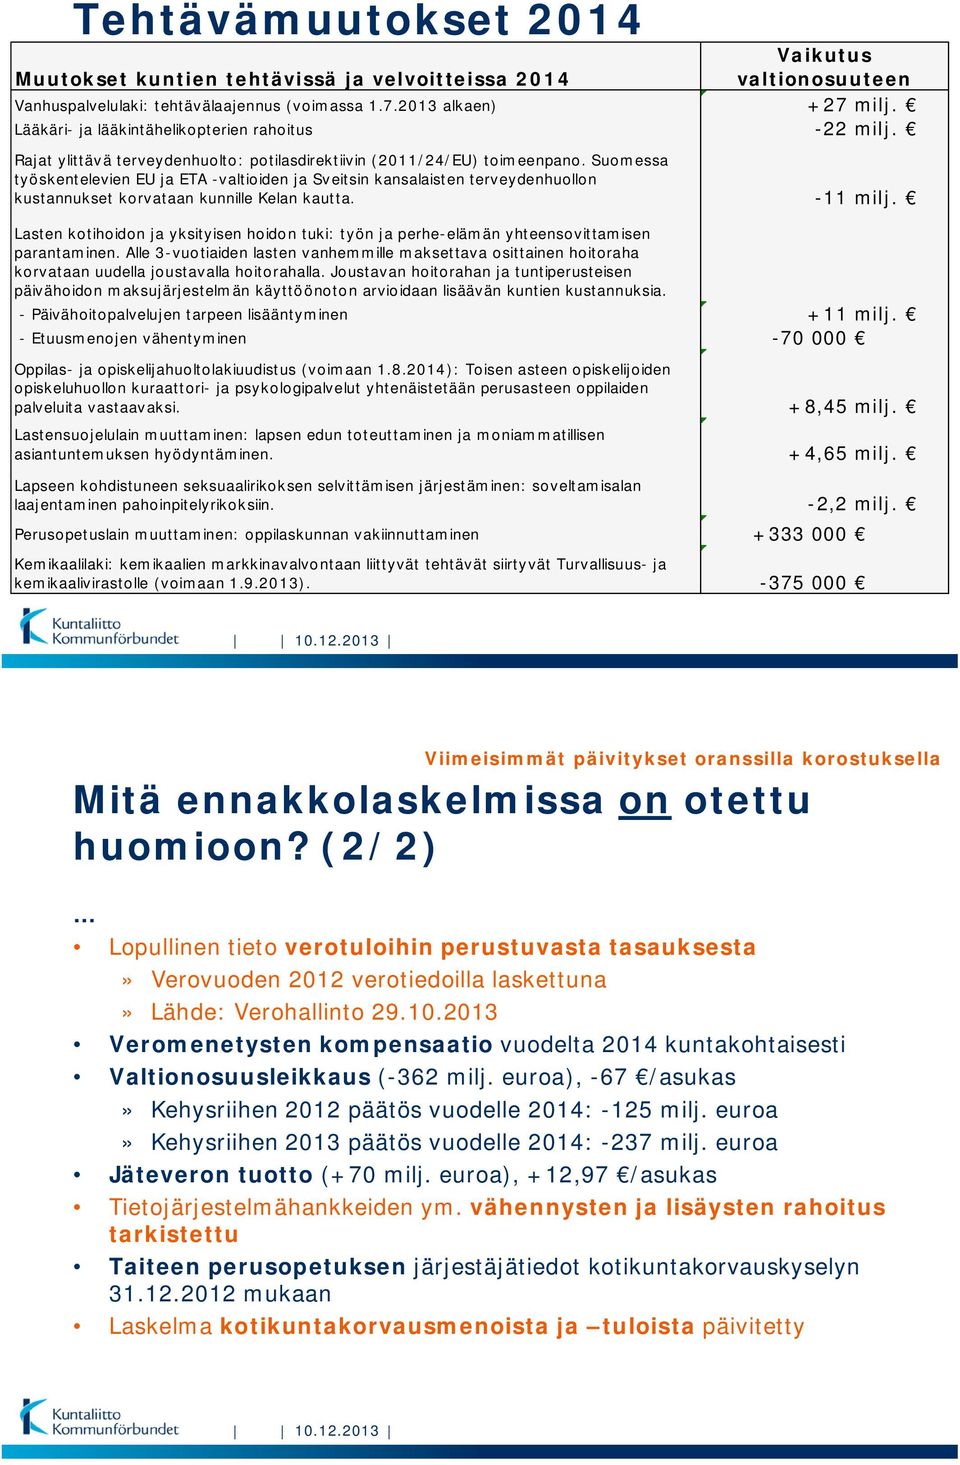 Suomessa työskentelevien EU ja ETA -valtioiden ja Sveitsin kansalaisten terveydenhuollon kustannukset korvataan kunnille Kelan kautta. -11 milj.